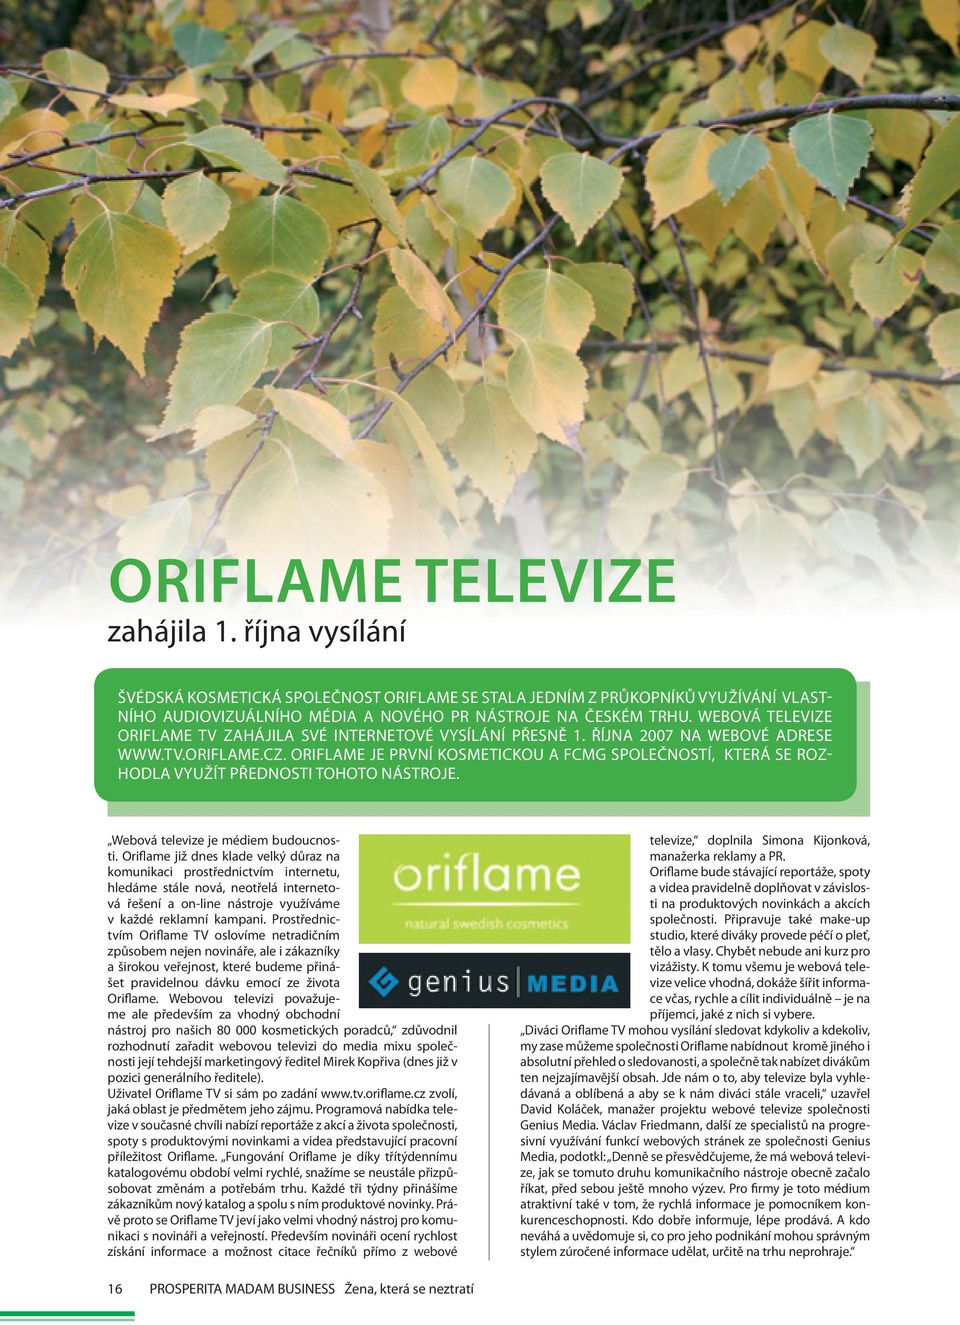 Oriflame je první kosmetickou a FCMG společností, která se rozhodla využít přednosti tohoto nástroje. Webová televize je médiem budoucnosti.